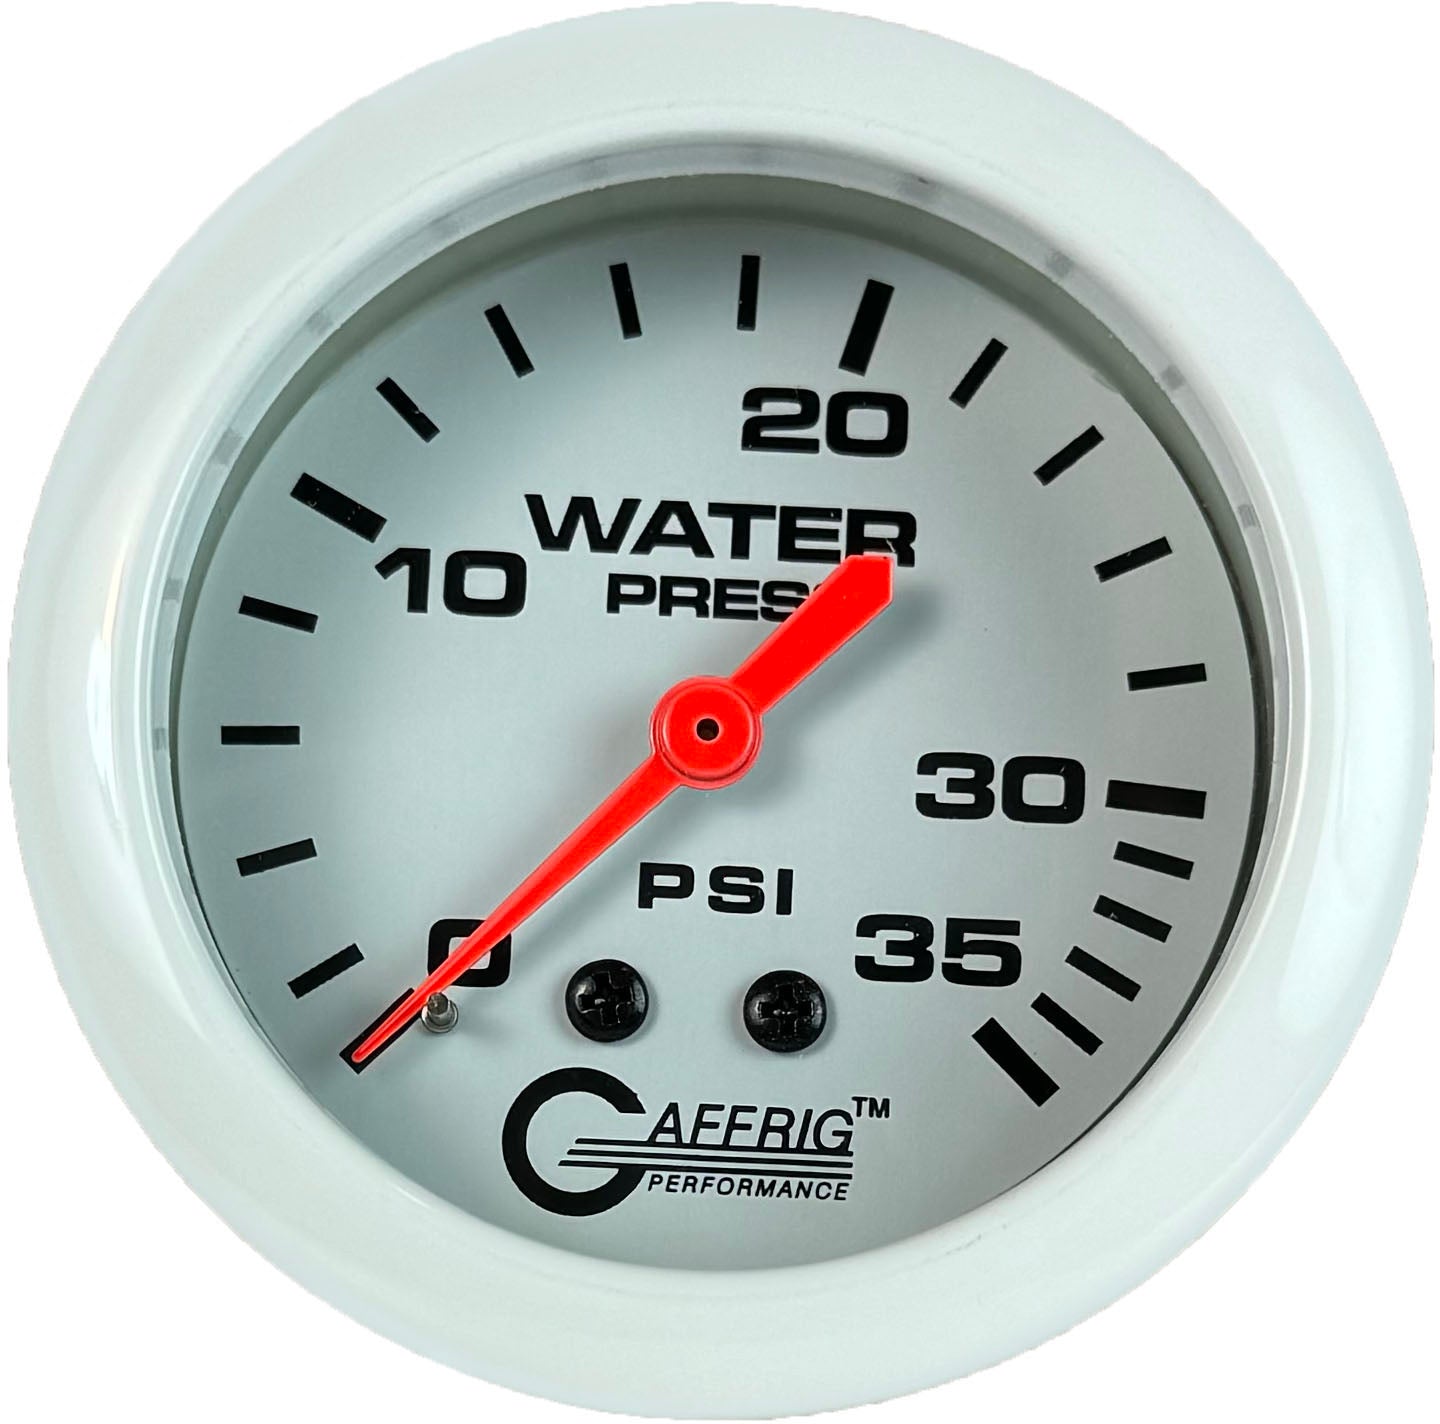 GAFFRIG PART #13014 2 5/8 INCH MECHANICAL WATER PRESSURE GAUGE 0-35 PSI WHITE NO FAT RIM (STANDARD)